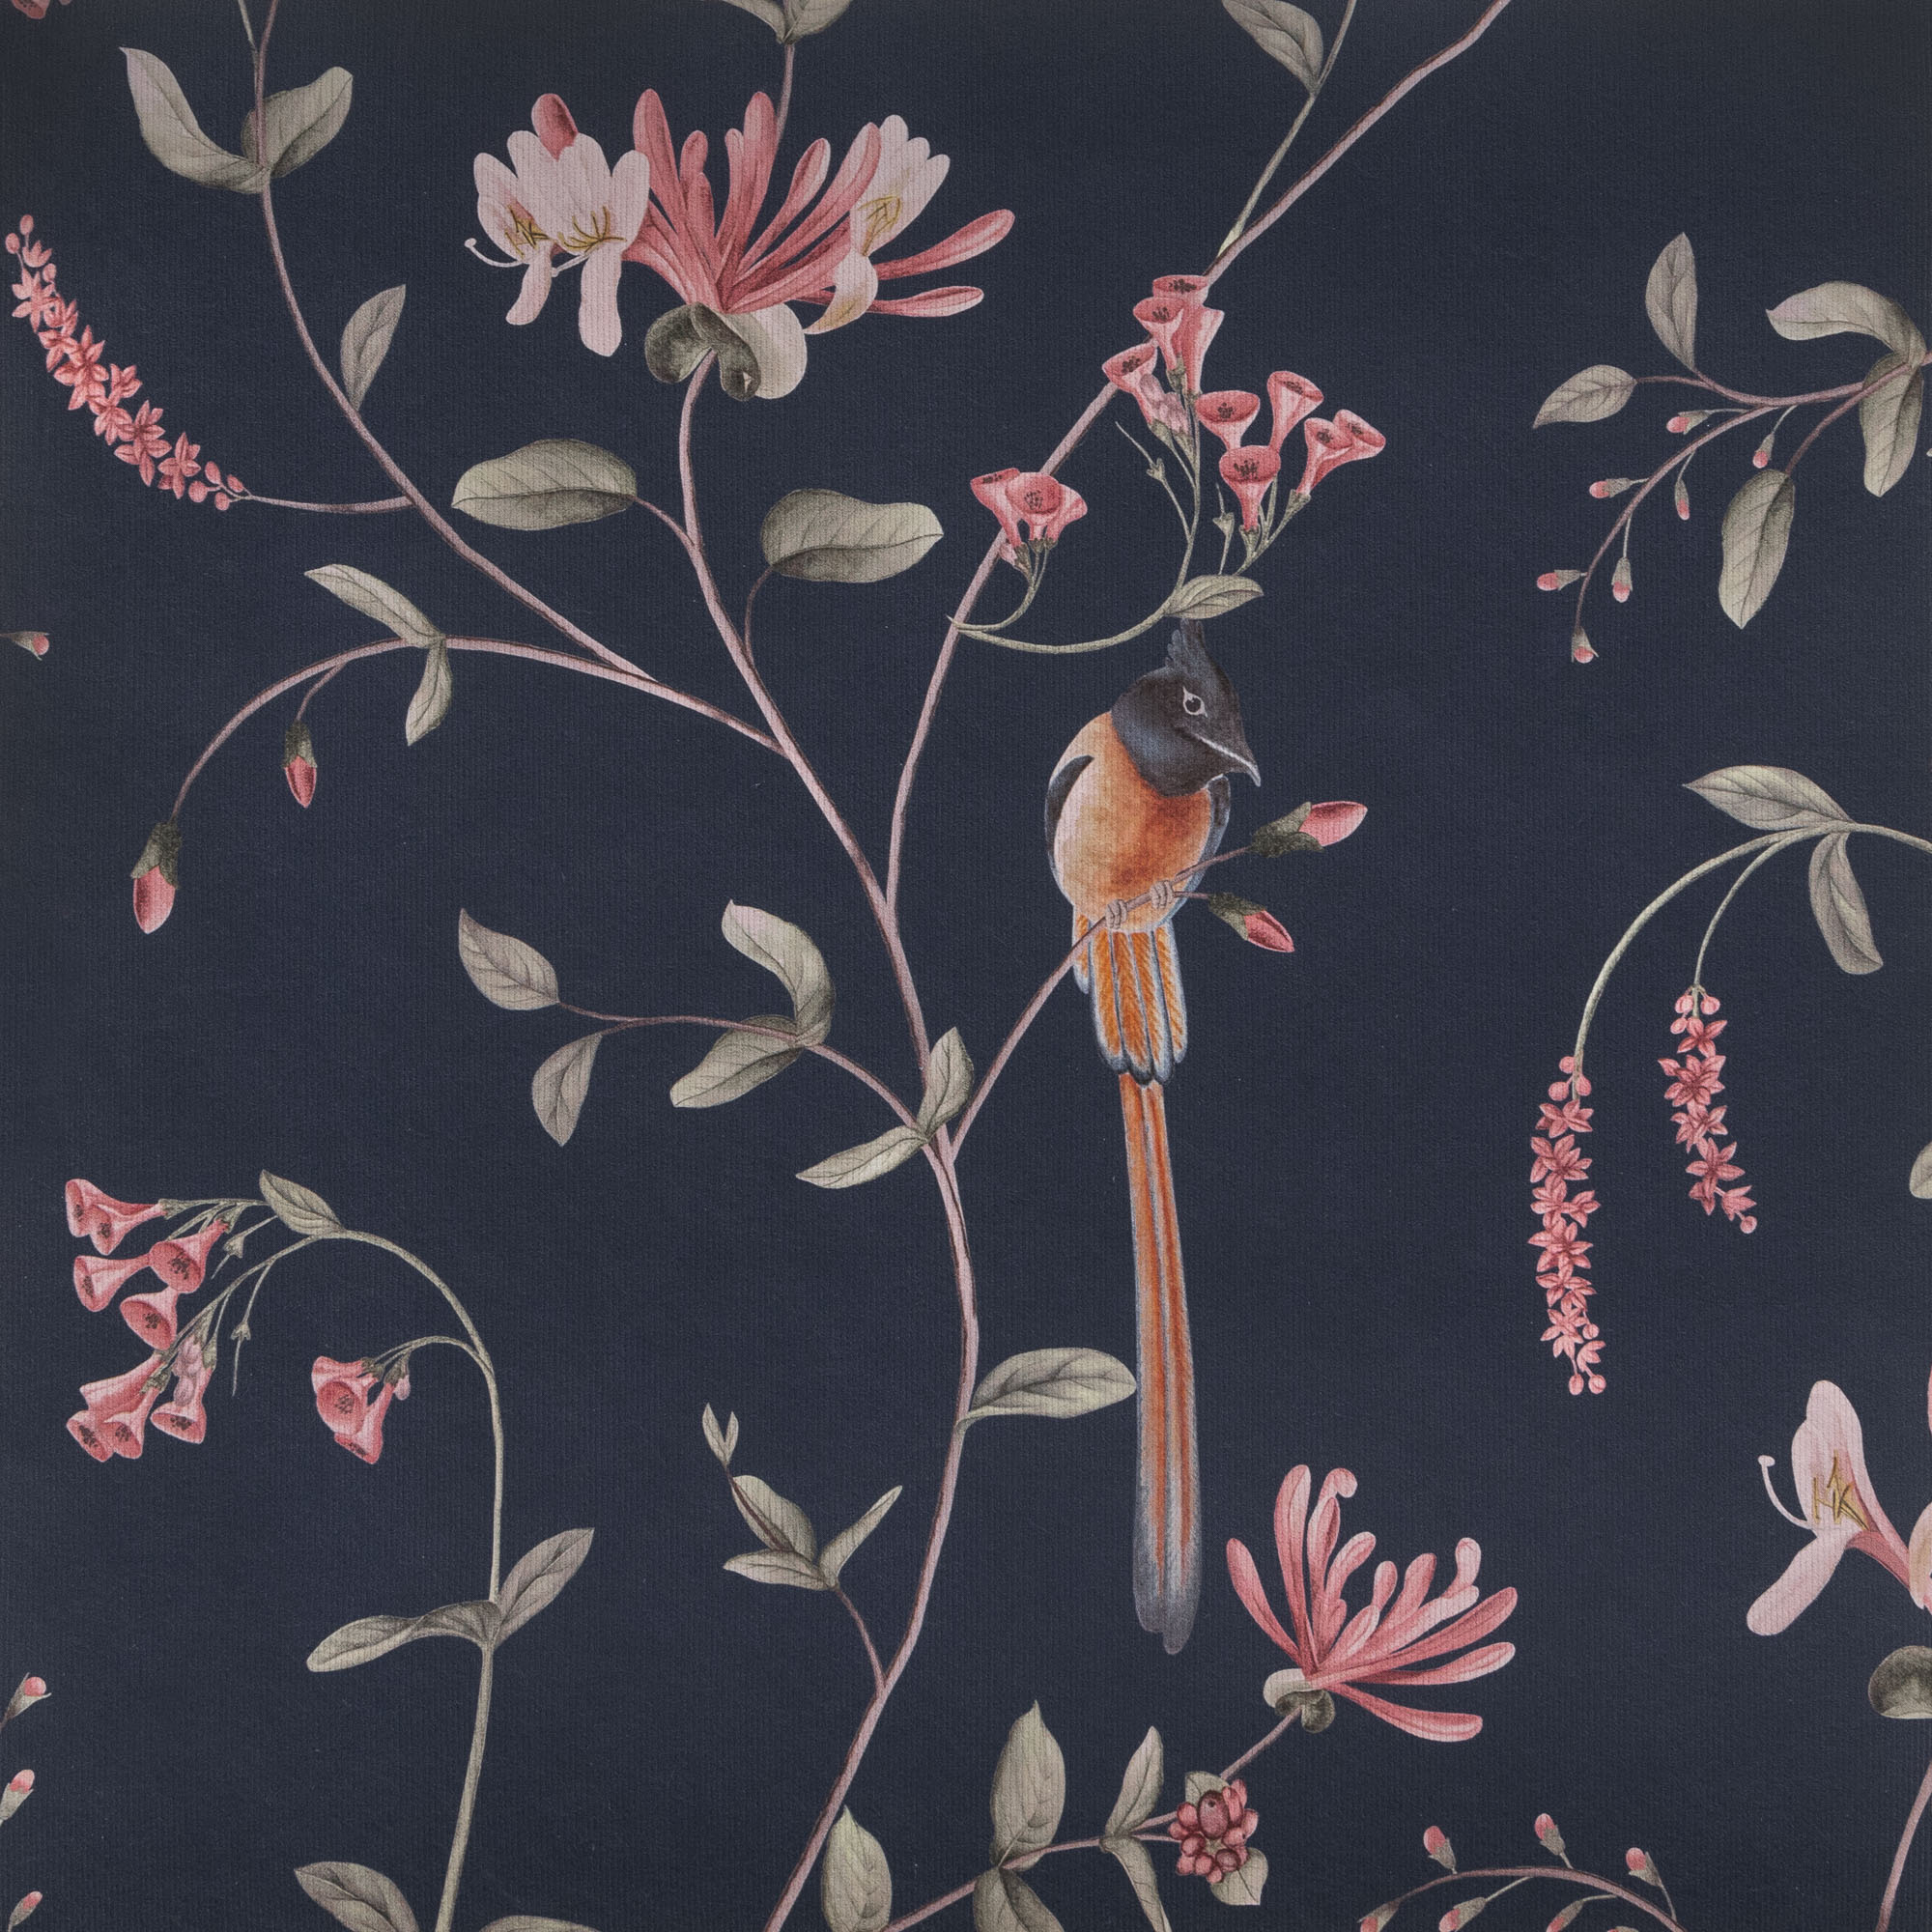 A Persian Garden Moonlit - Wallpaper Swatch 7" x 10"